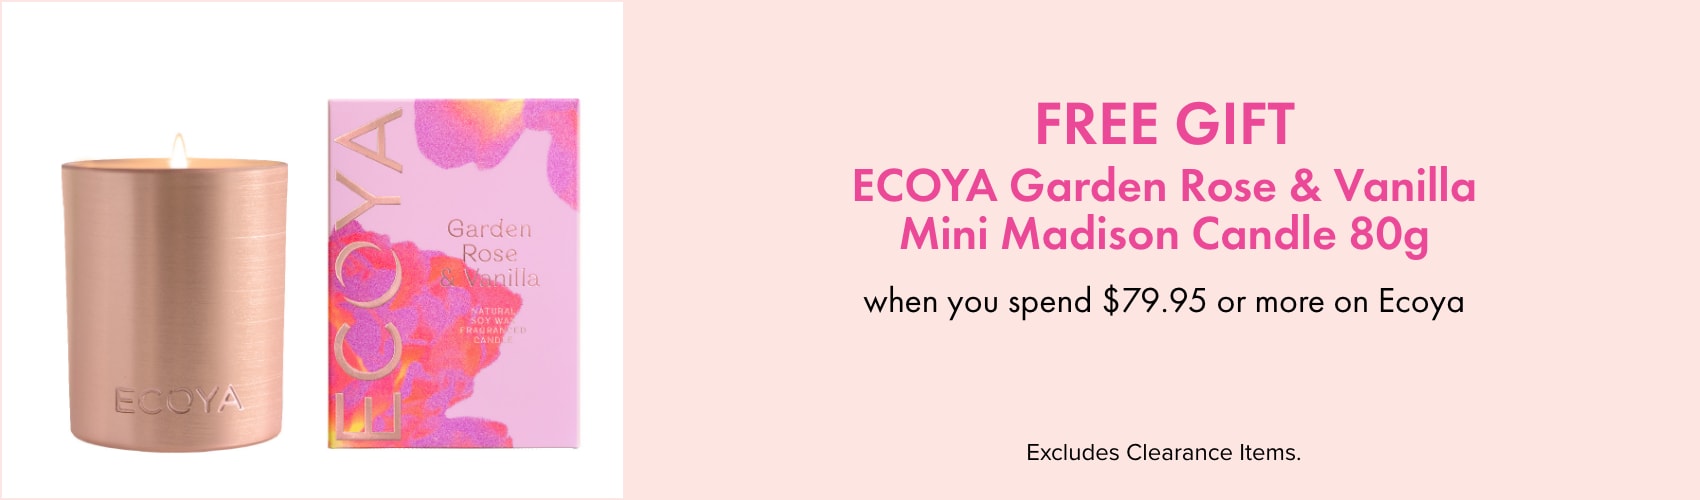 Free gift ECOYA garden rose & vanilla mini madison candle 80g